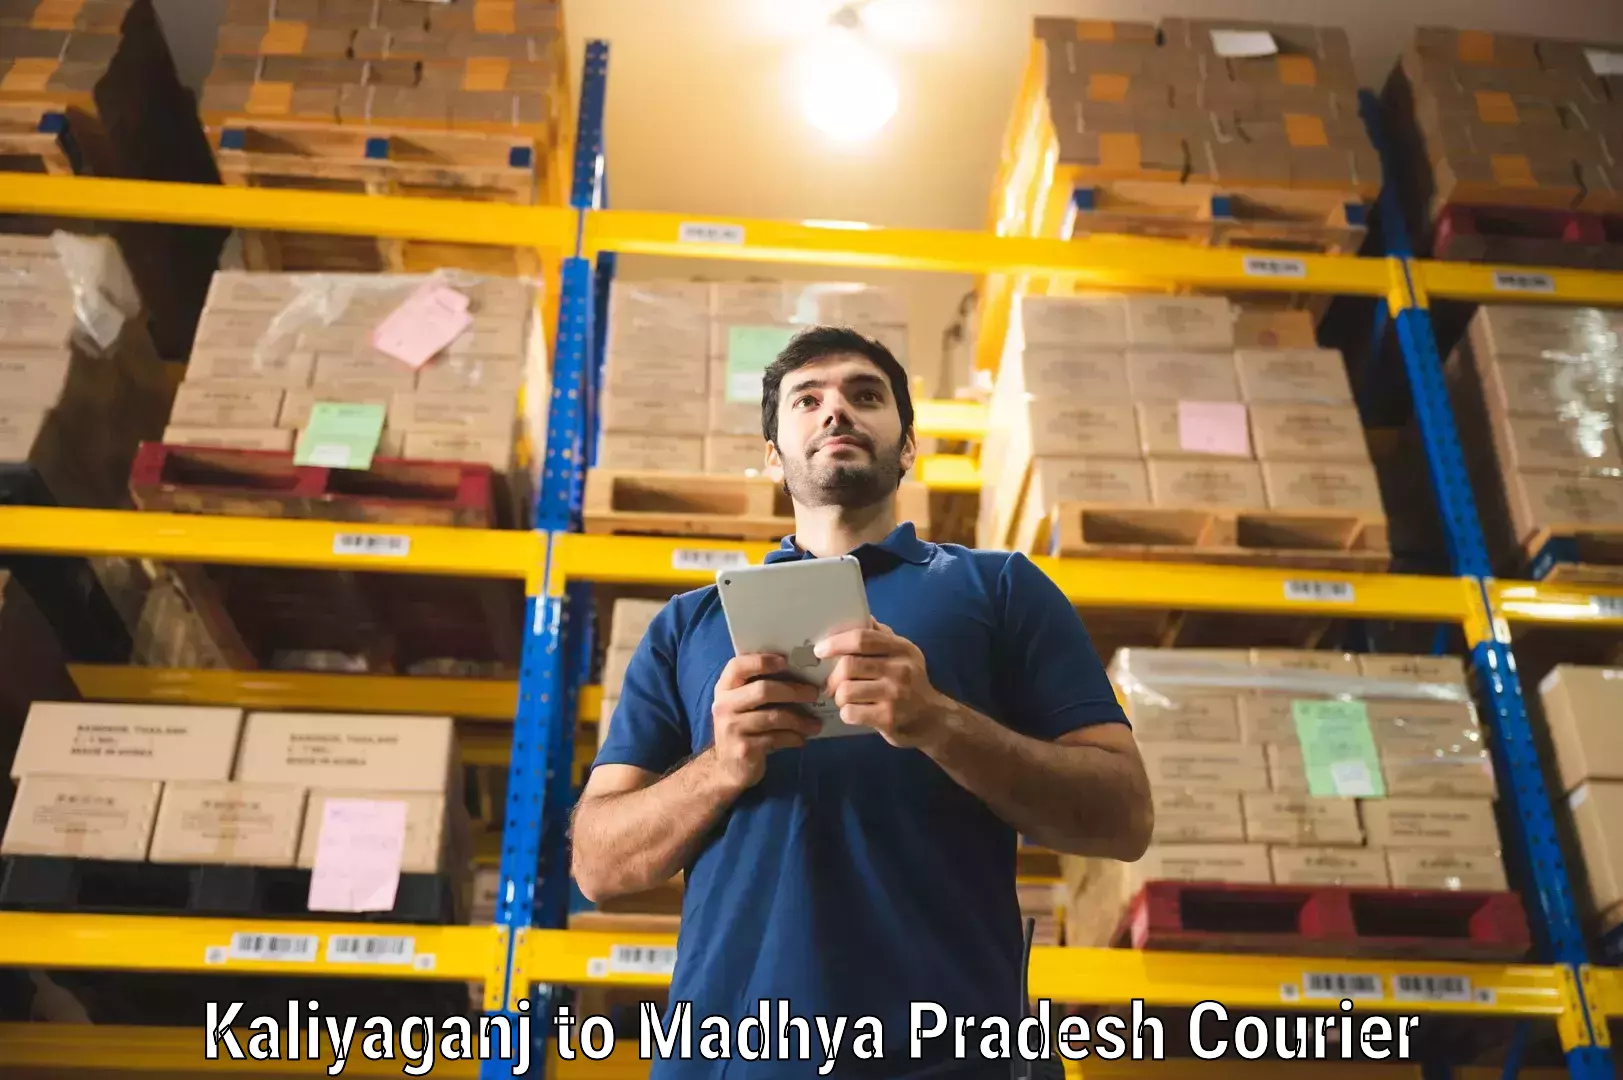 Cross-border shipping Kaliyaganj to Madhya Pradesh